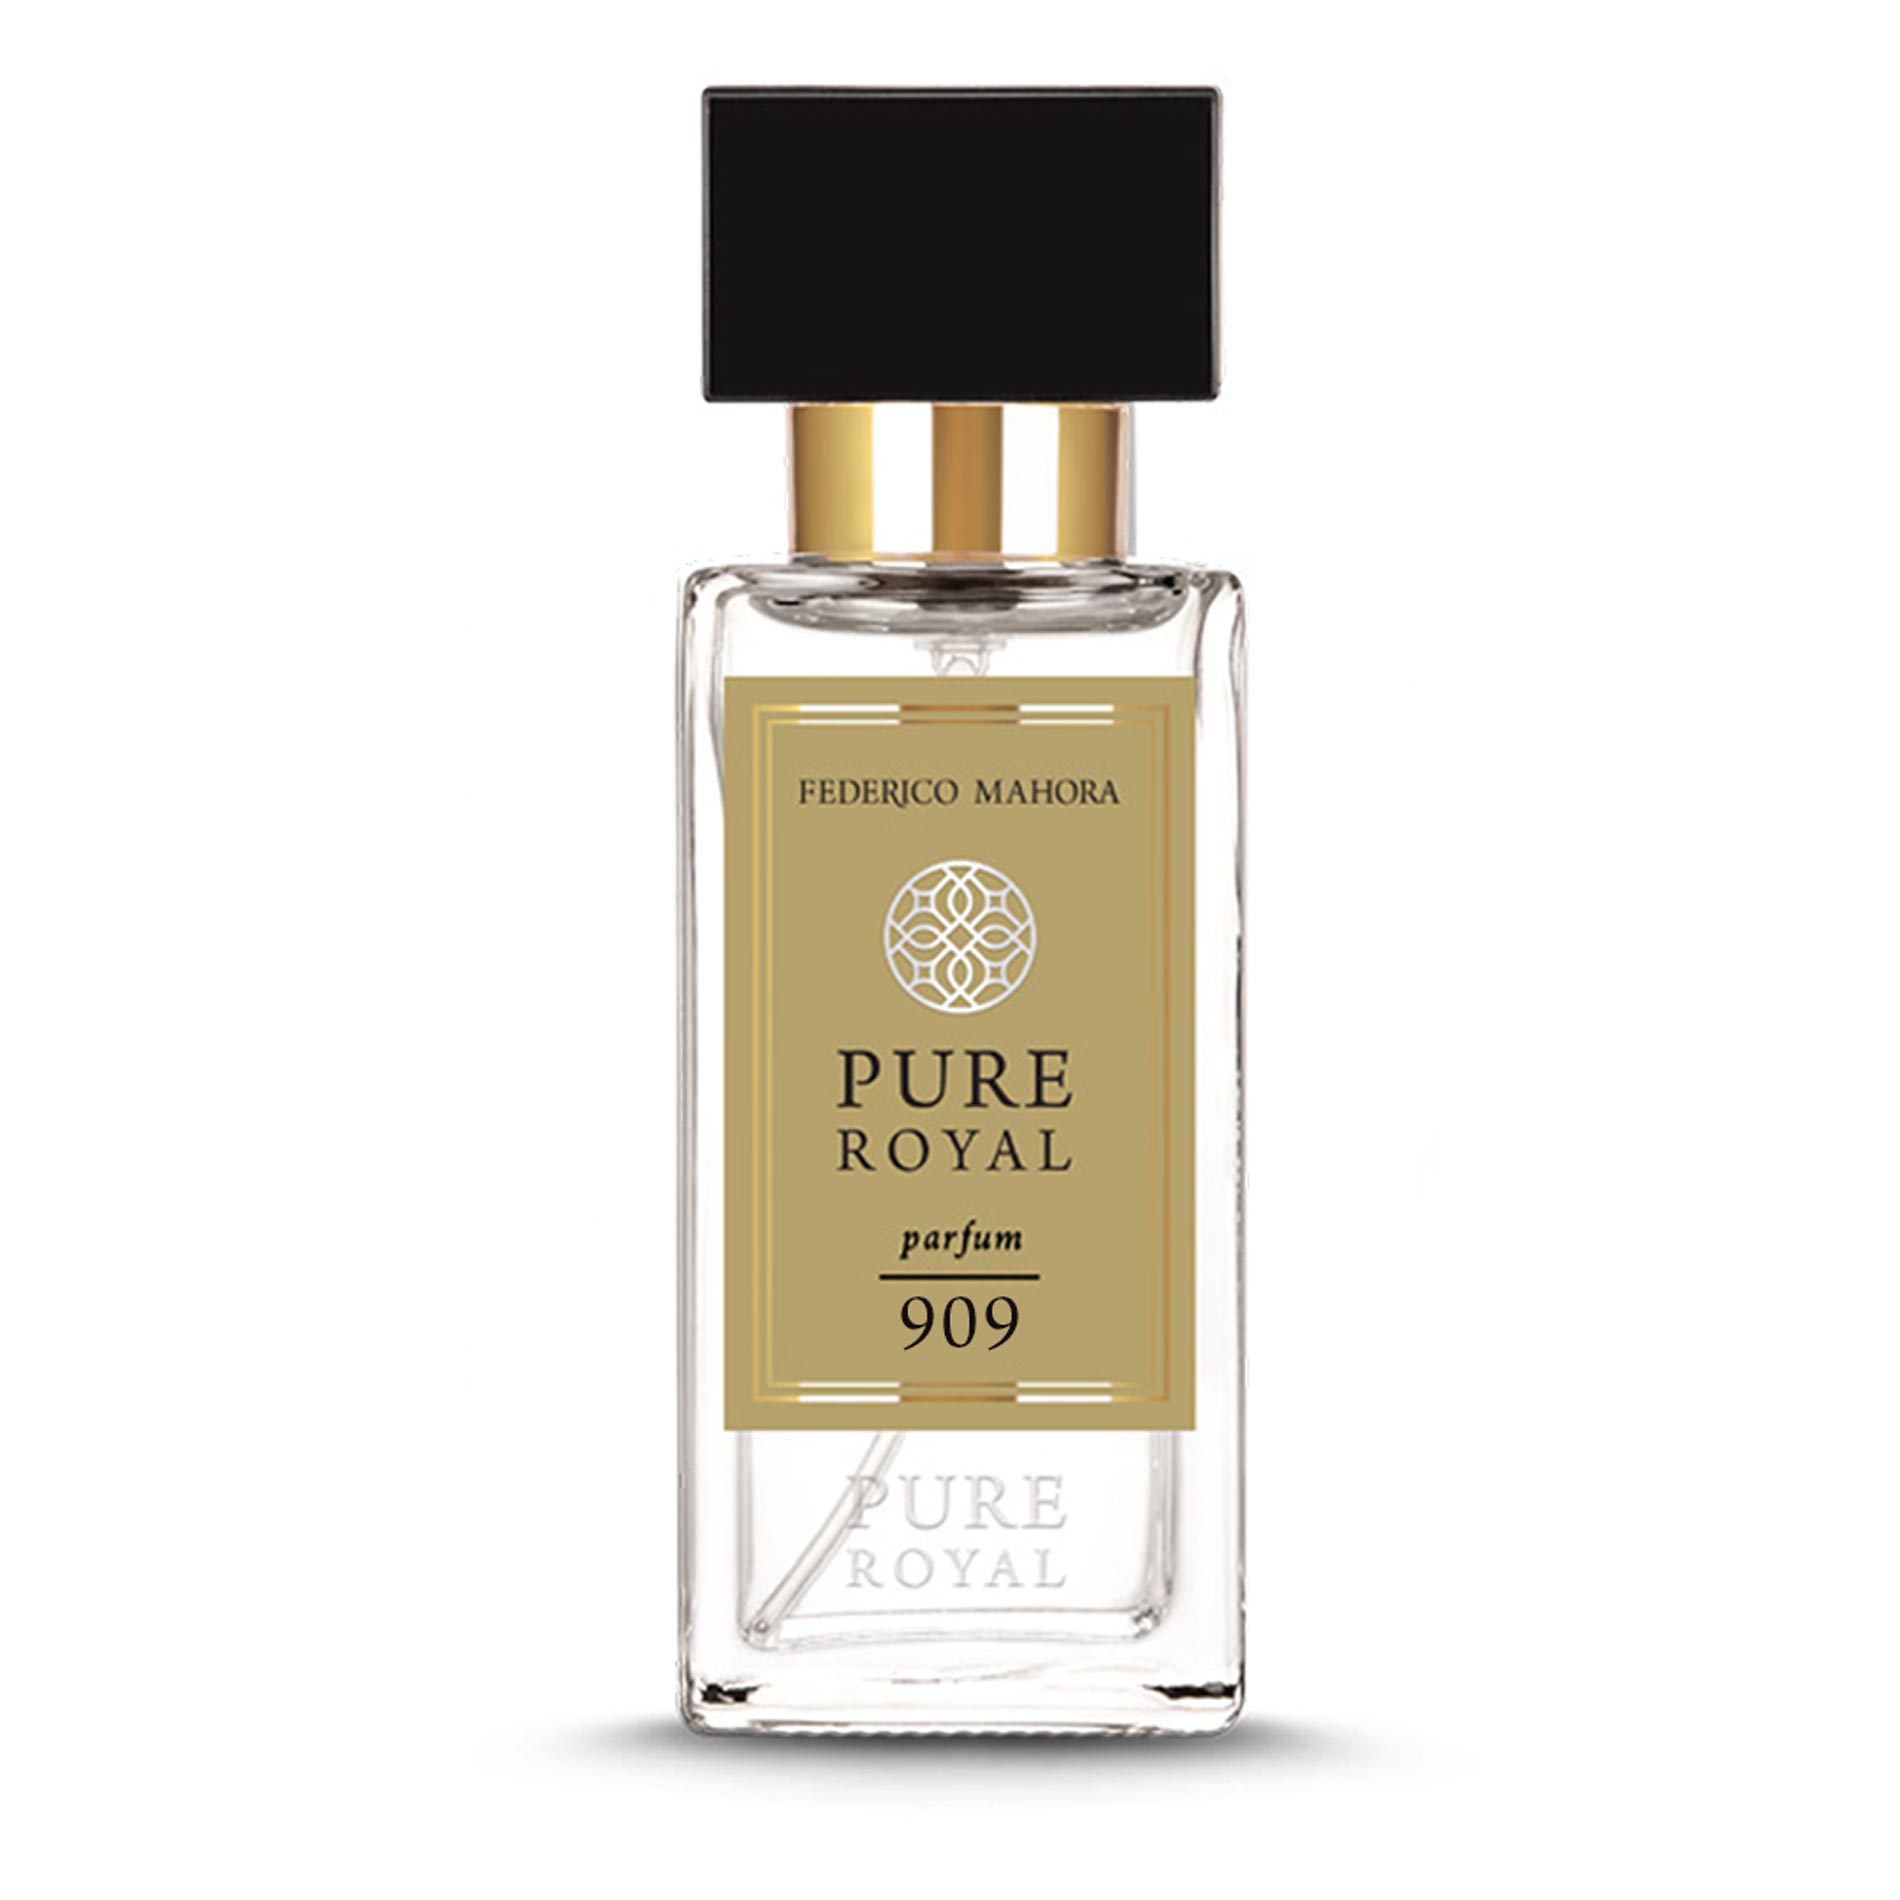 PURE ROYAL Parfum 909 Parfum